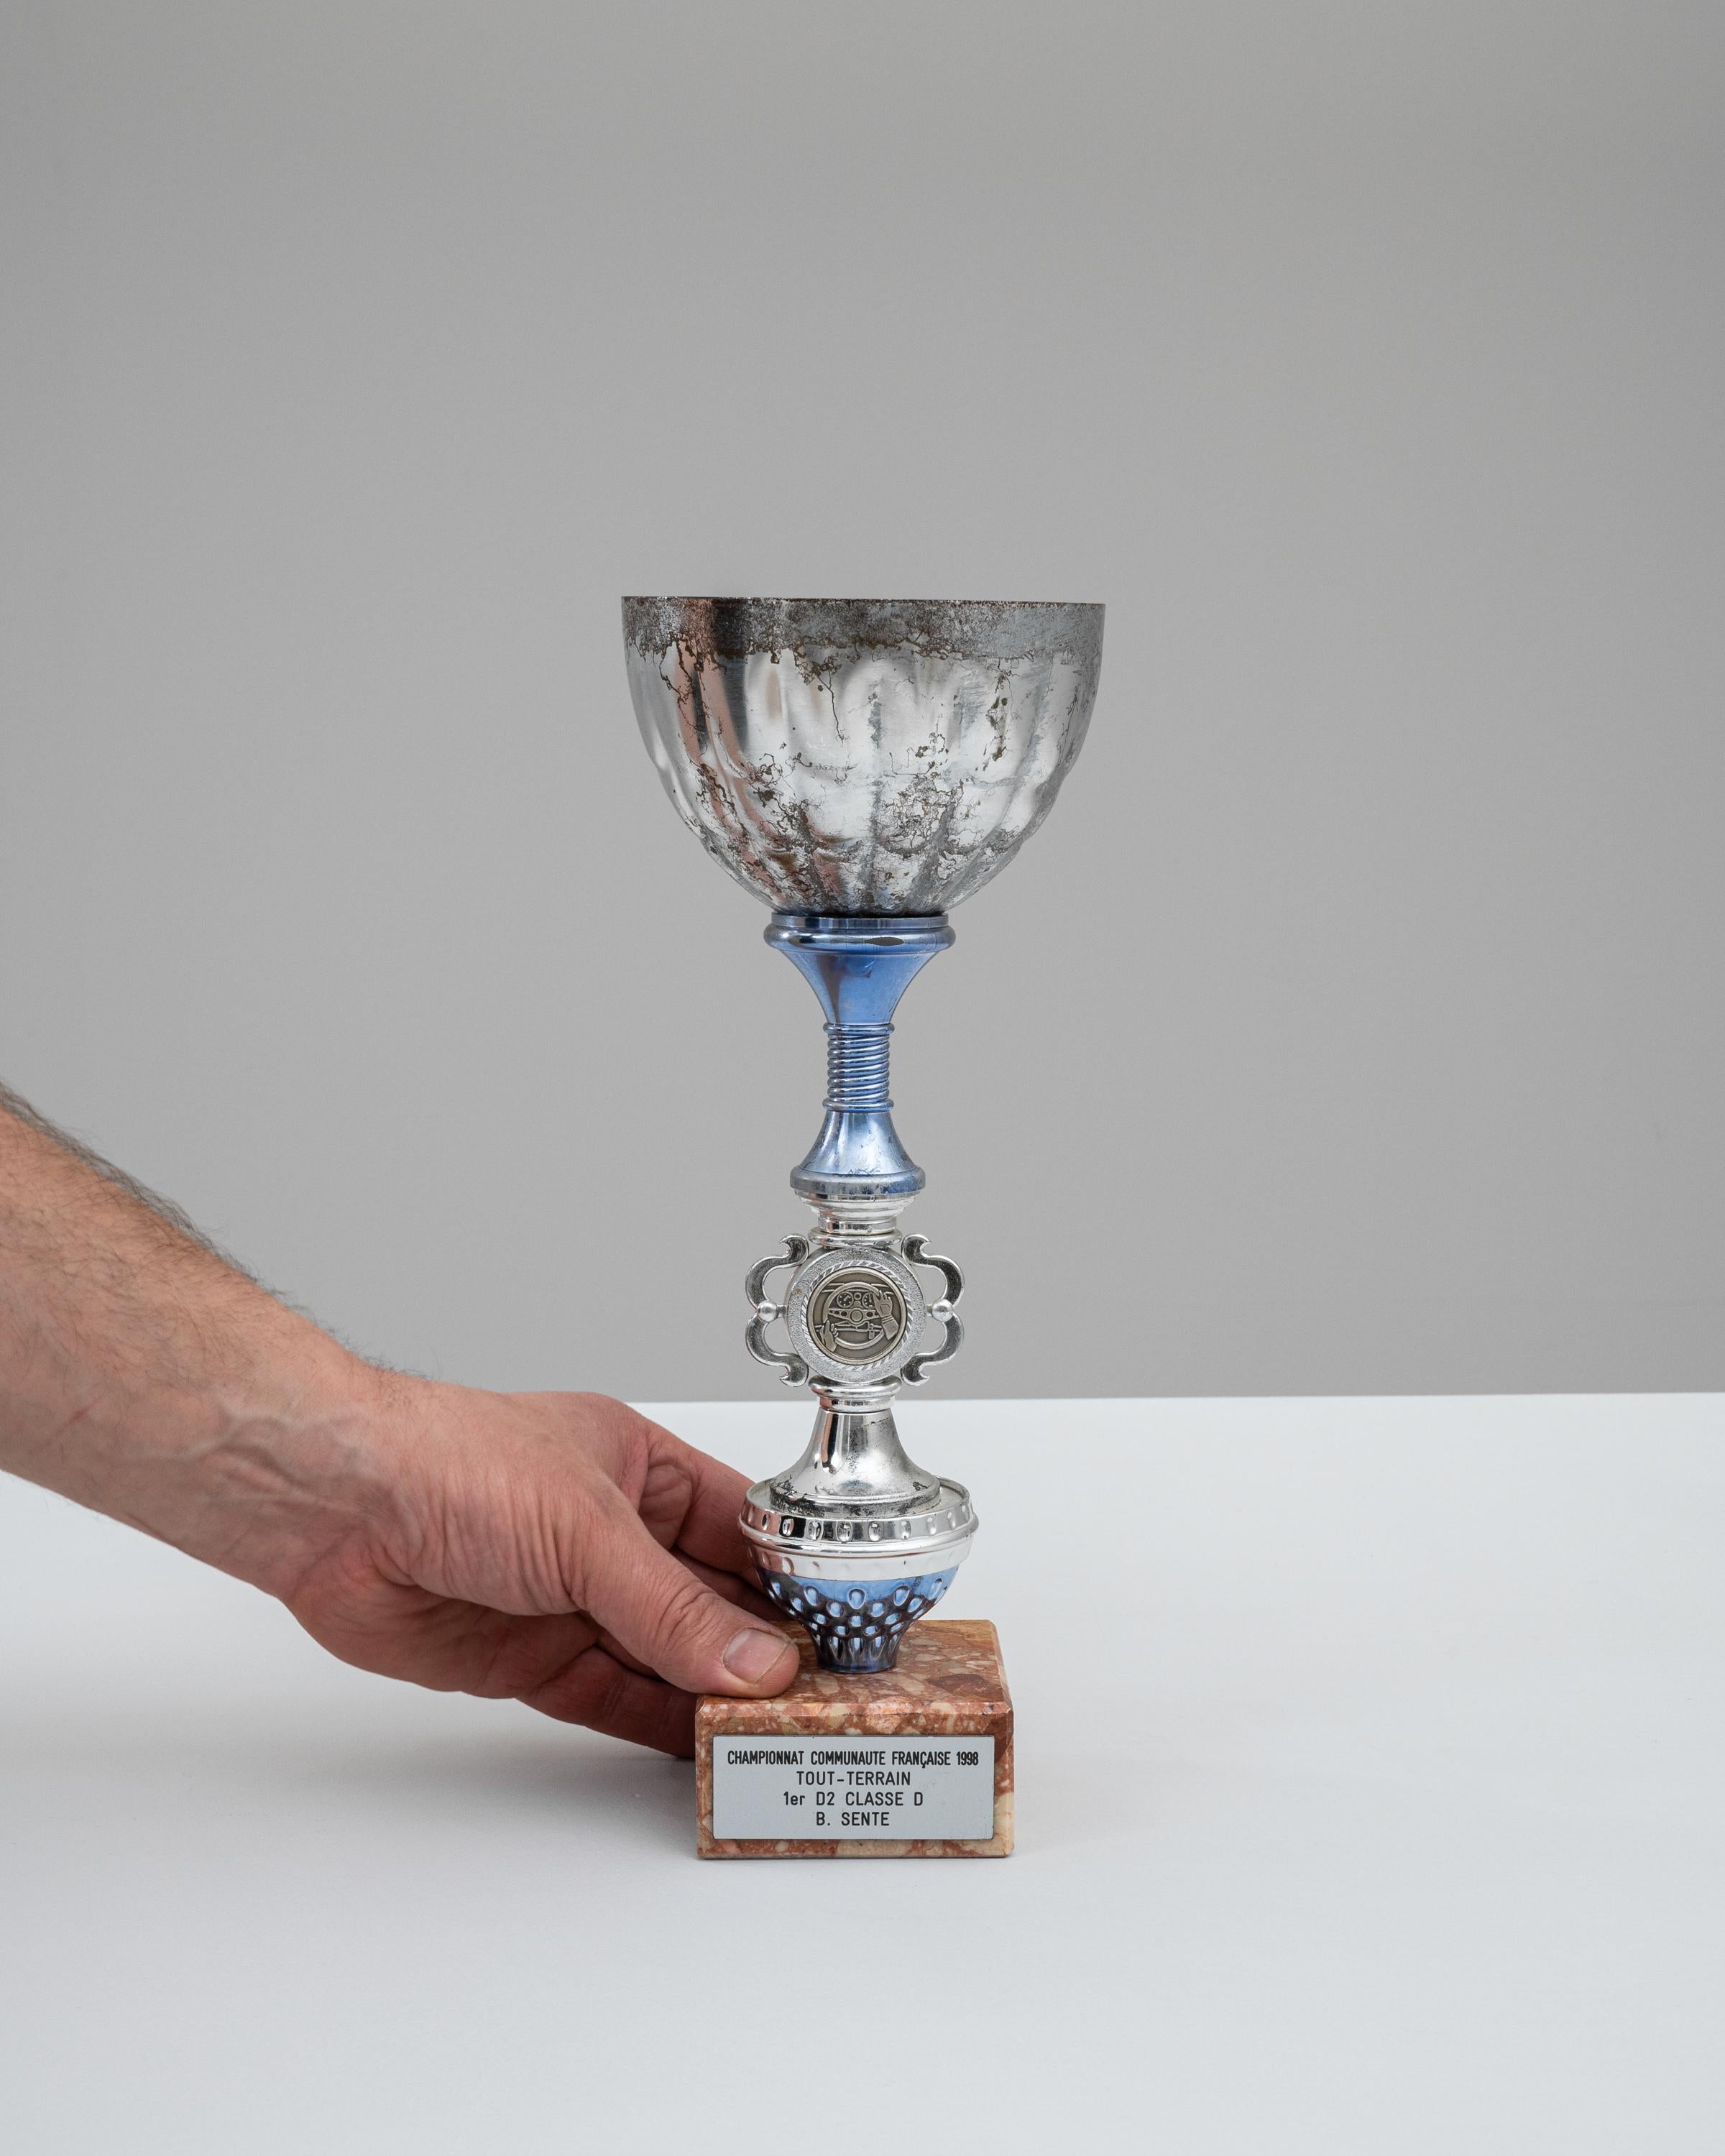 Ce gobelet belge en métal et marbre des années 1990 est un hommage emblématique aux triomphes de la course tout-terrain, marquant un moment victorieux du championnat Tout-Terrain de 1998. Le gobelet lui-même présente une silhouette classique, avec